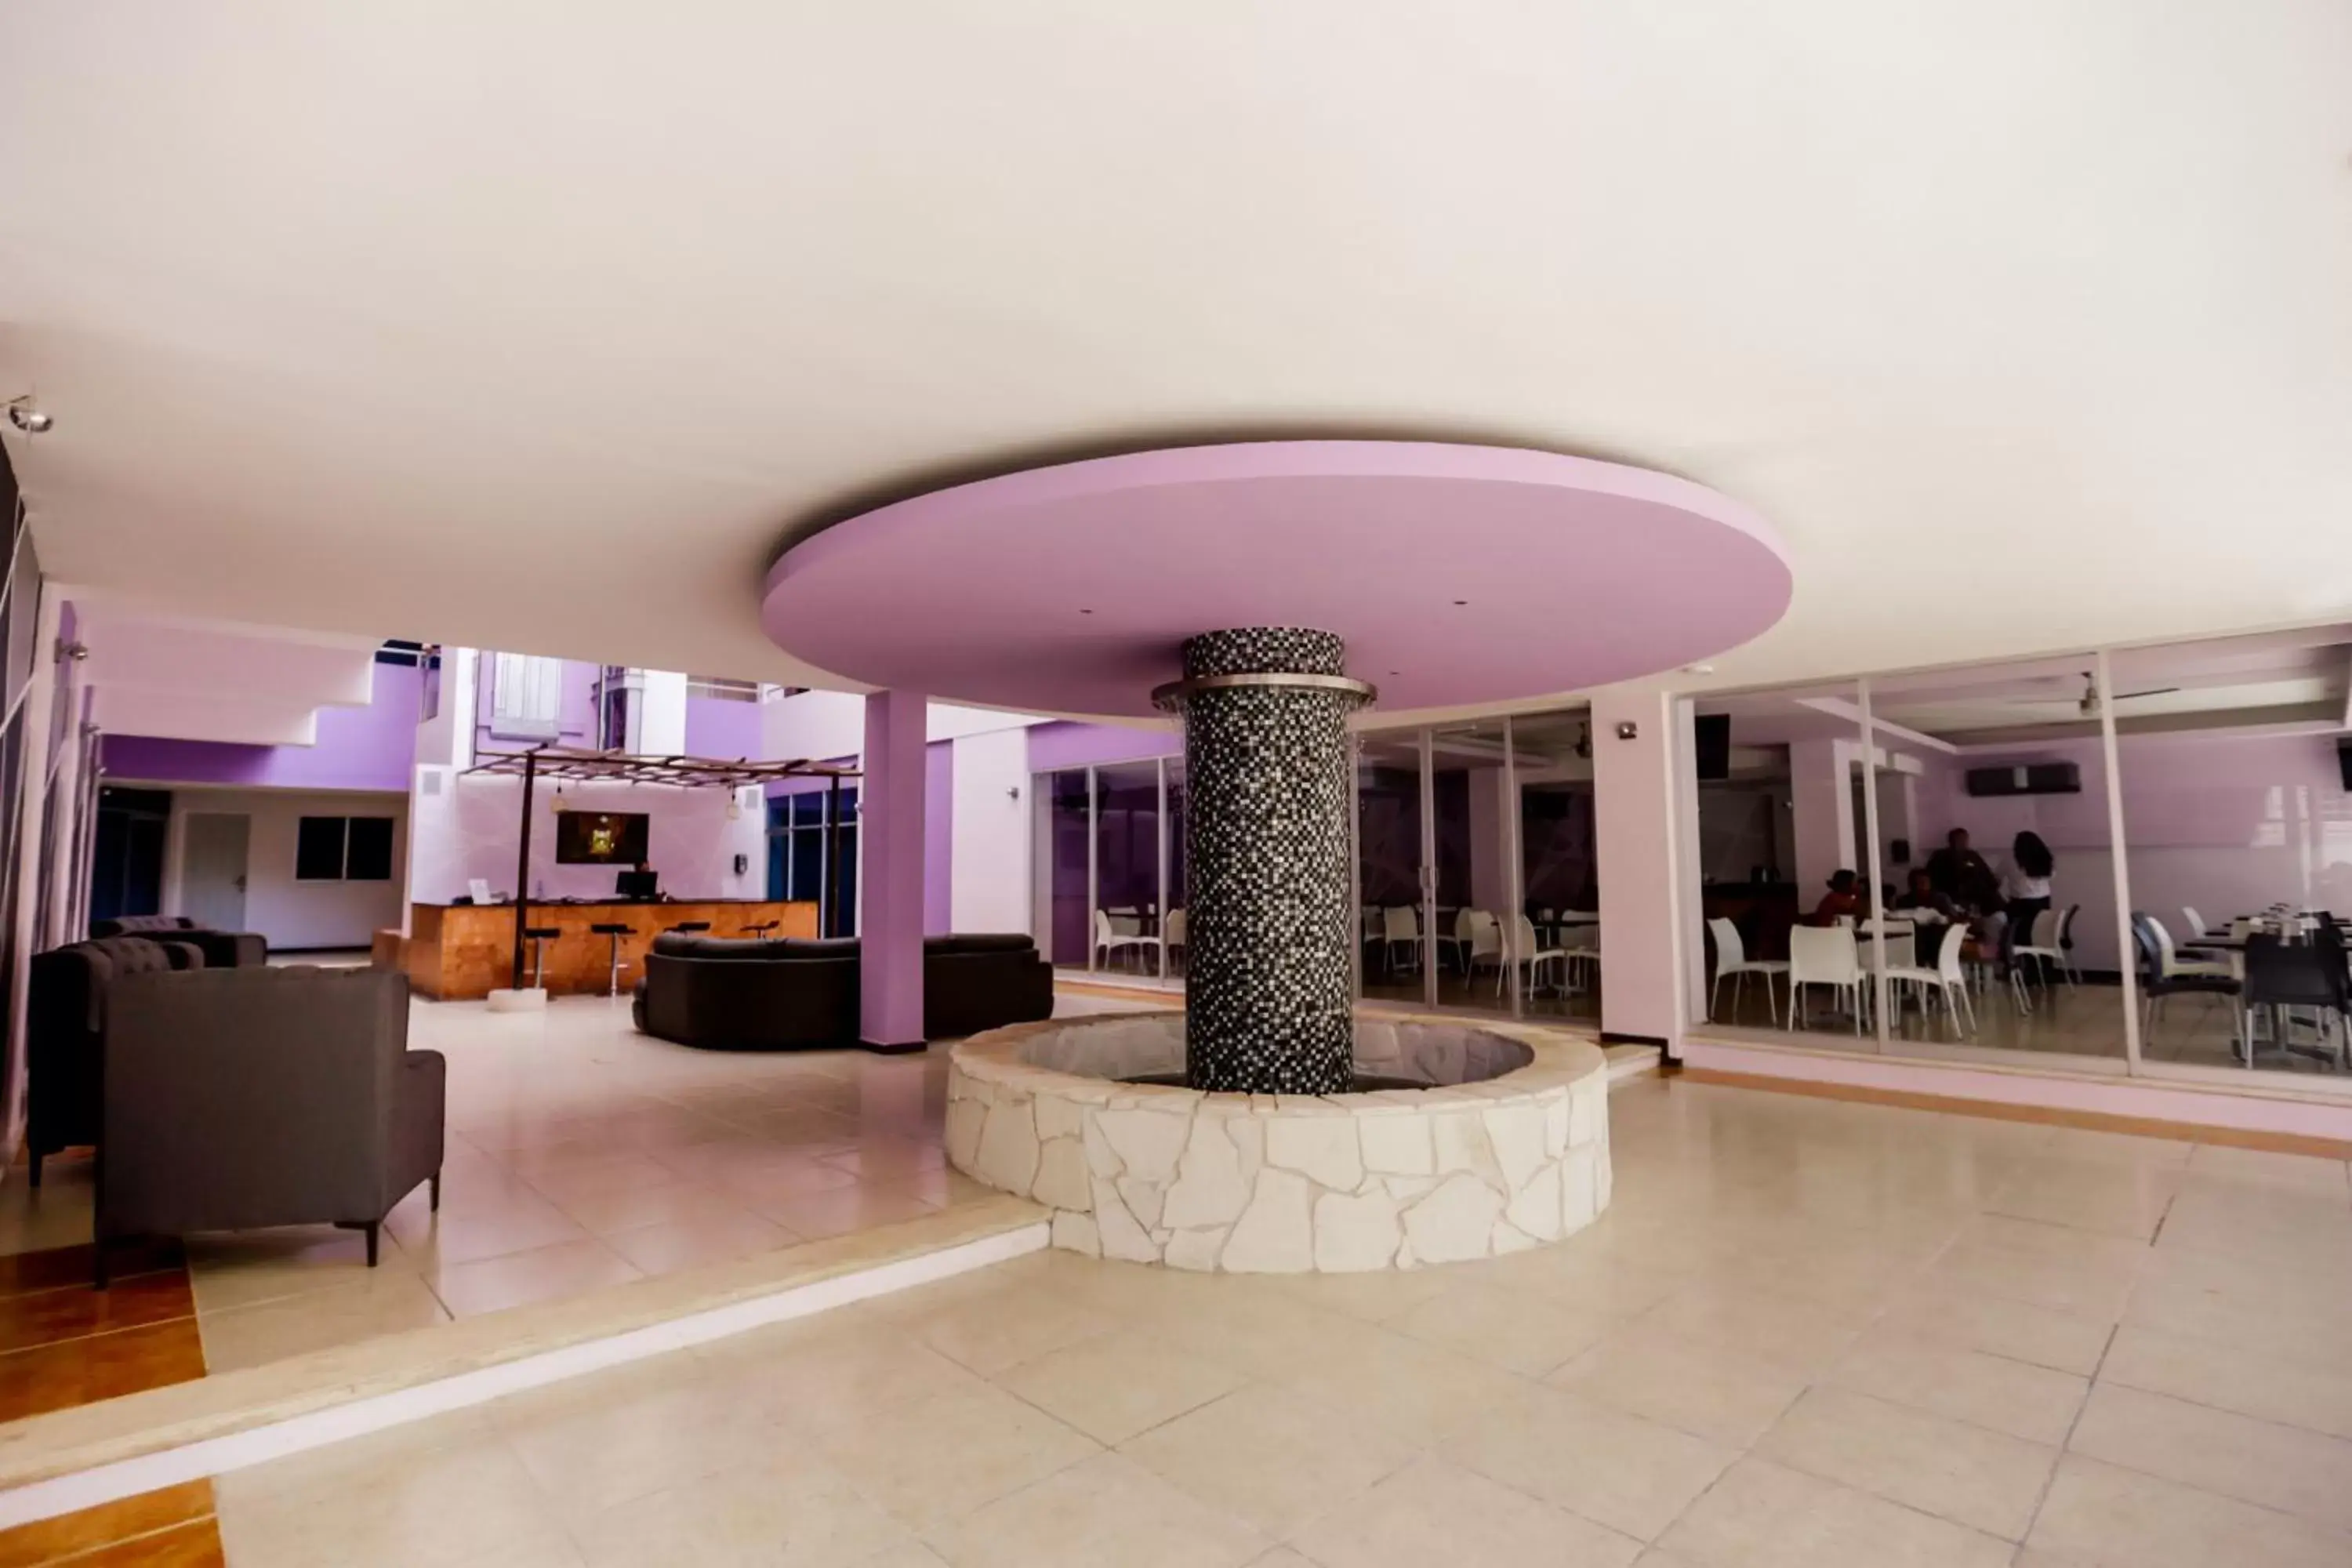 Lobby or reception, Lobby/Reception in Hotel Kavia